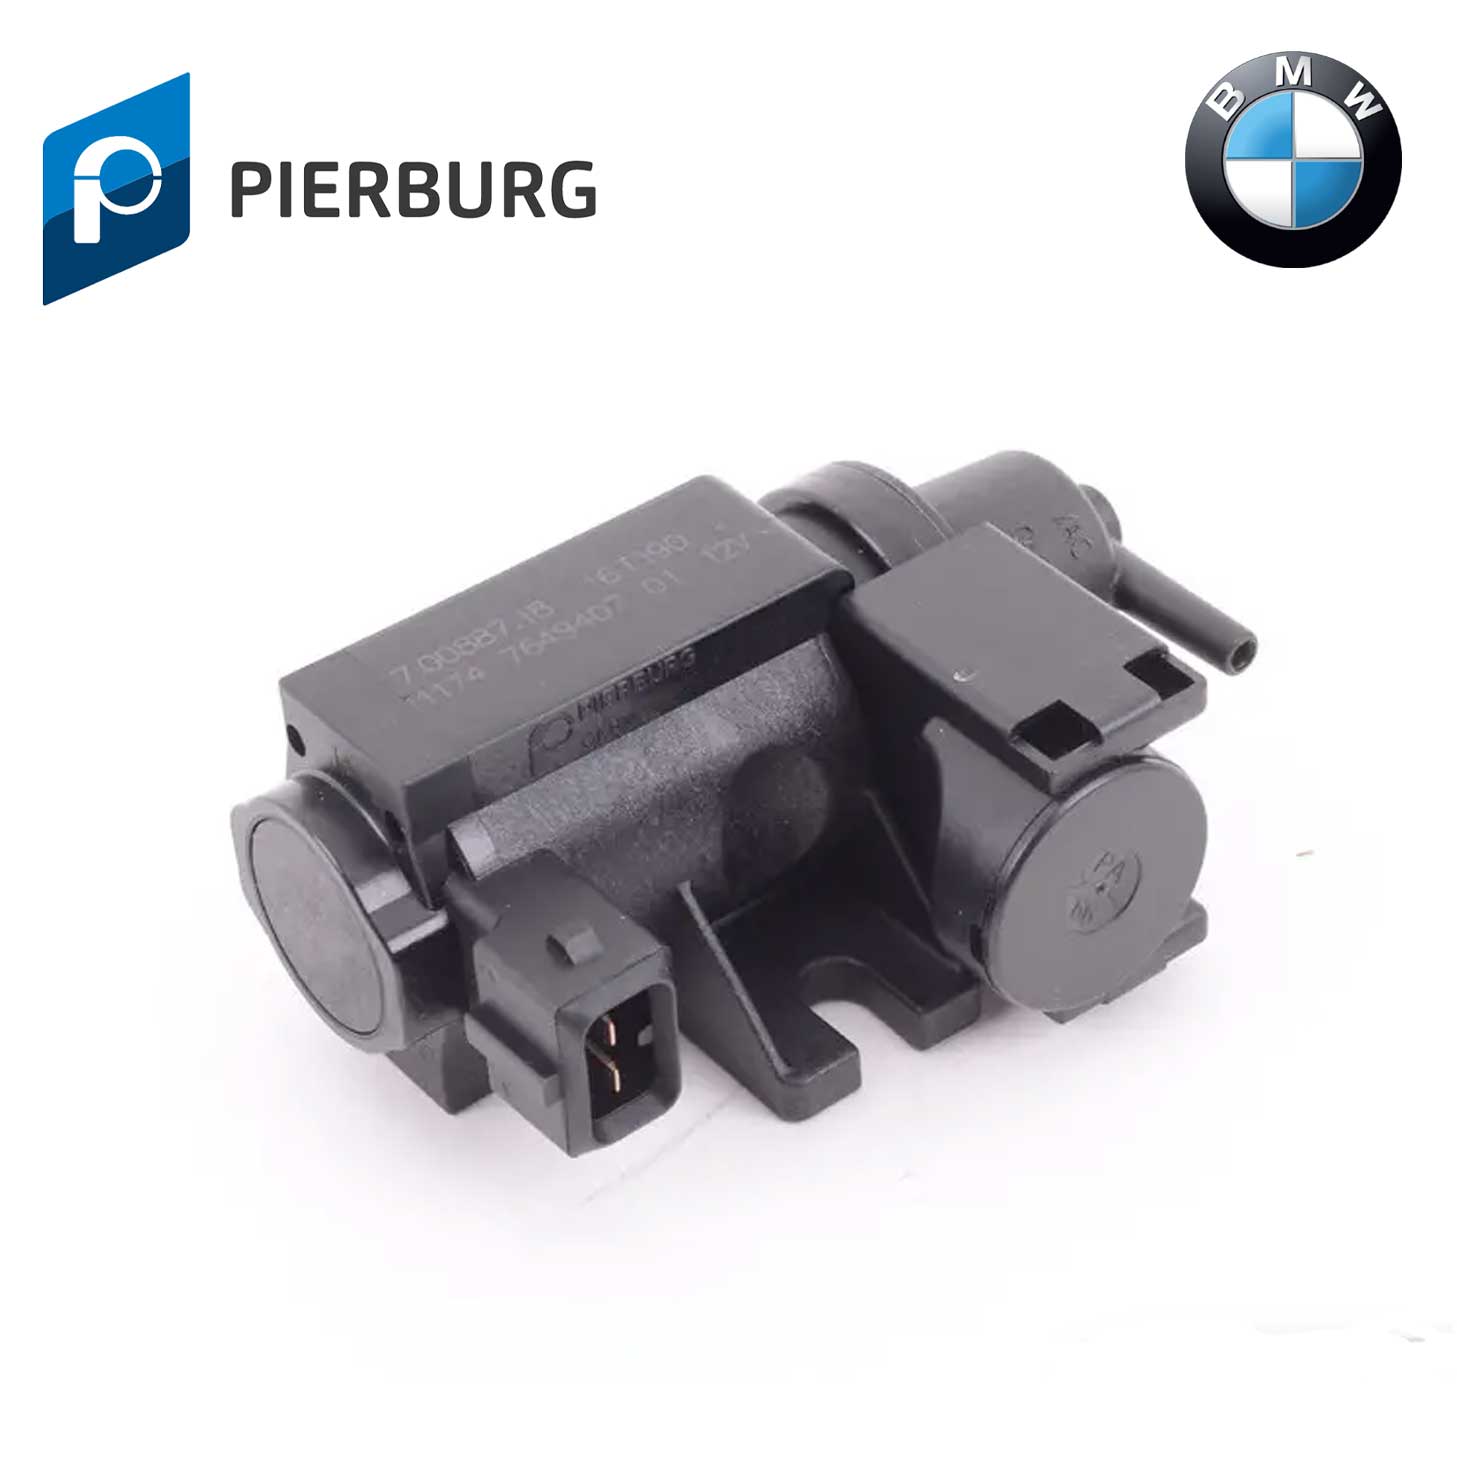 PIERBURG PRESSURE CONVERTER For BMW 135I 135IS 335I 335I XDRIVE 535I 535I GT 11747649407